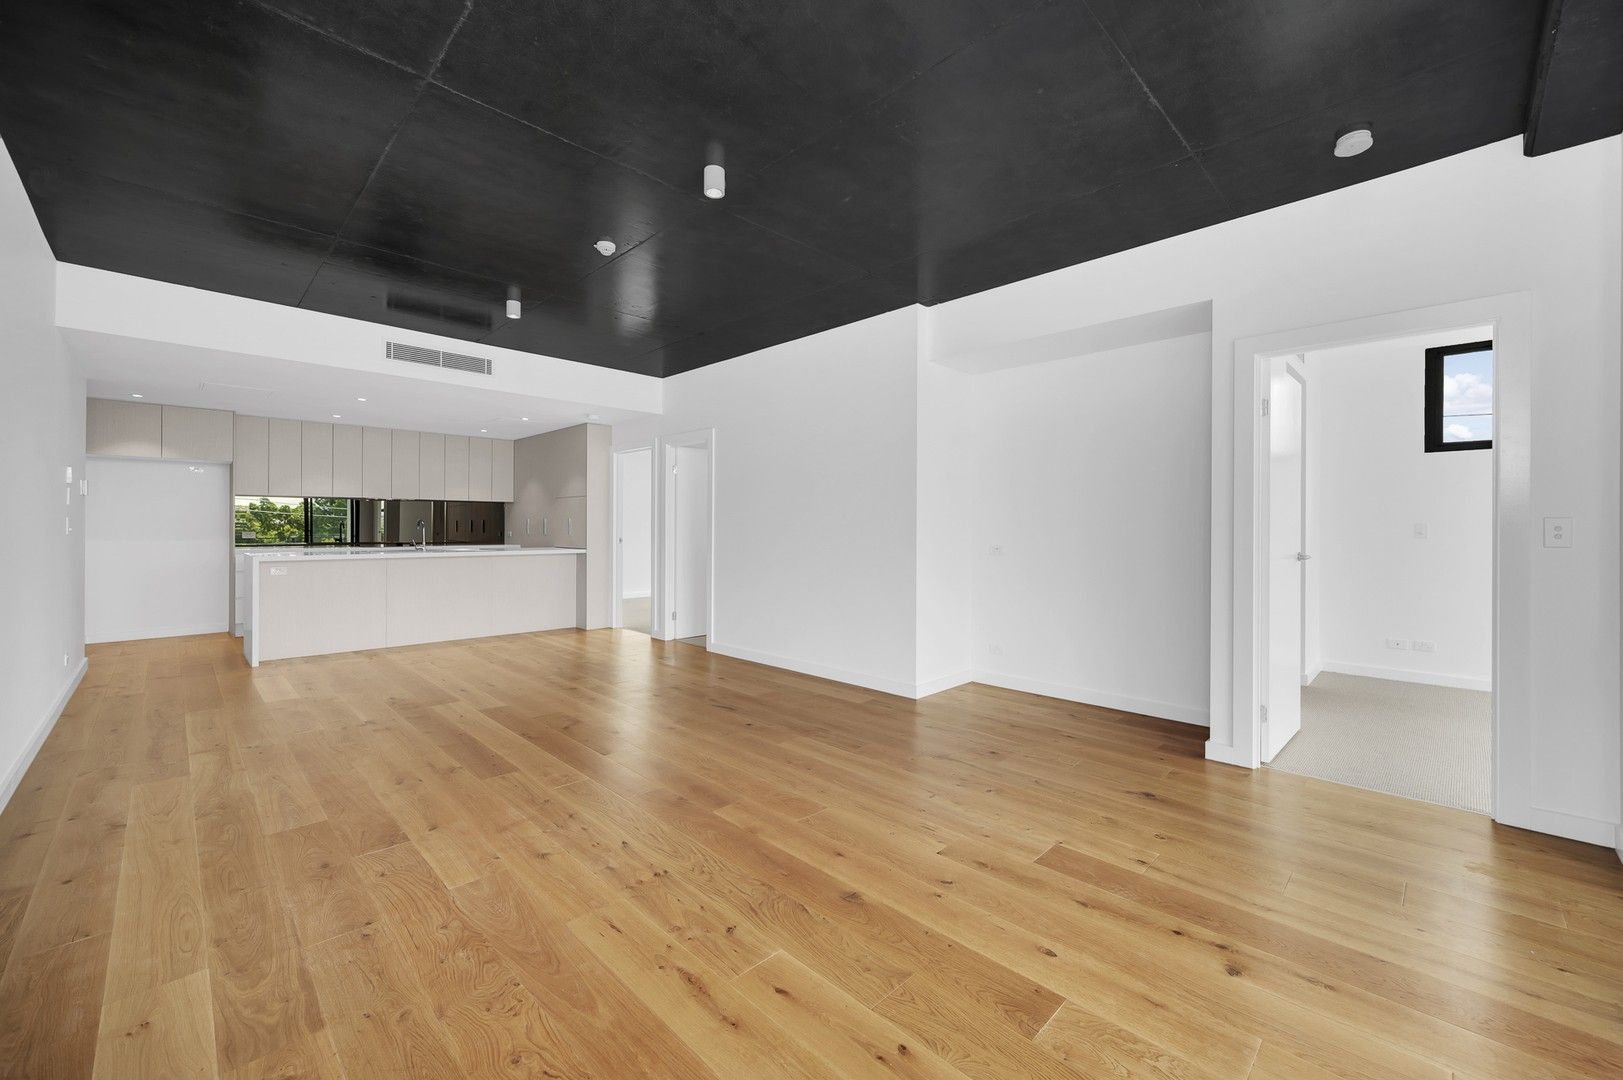 2 bedrooms Apartment / Unit / Flat in 110/208 Norman Avenue NORMAN PARK QLD, 4170